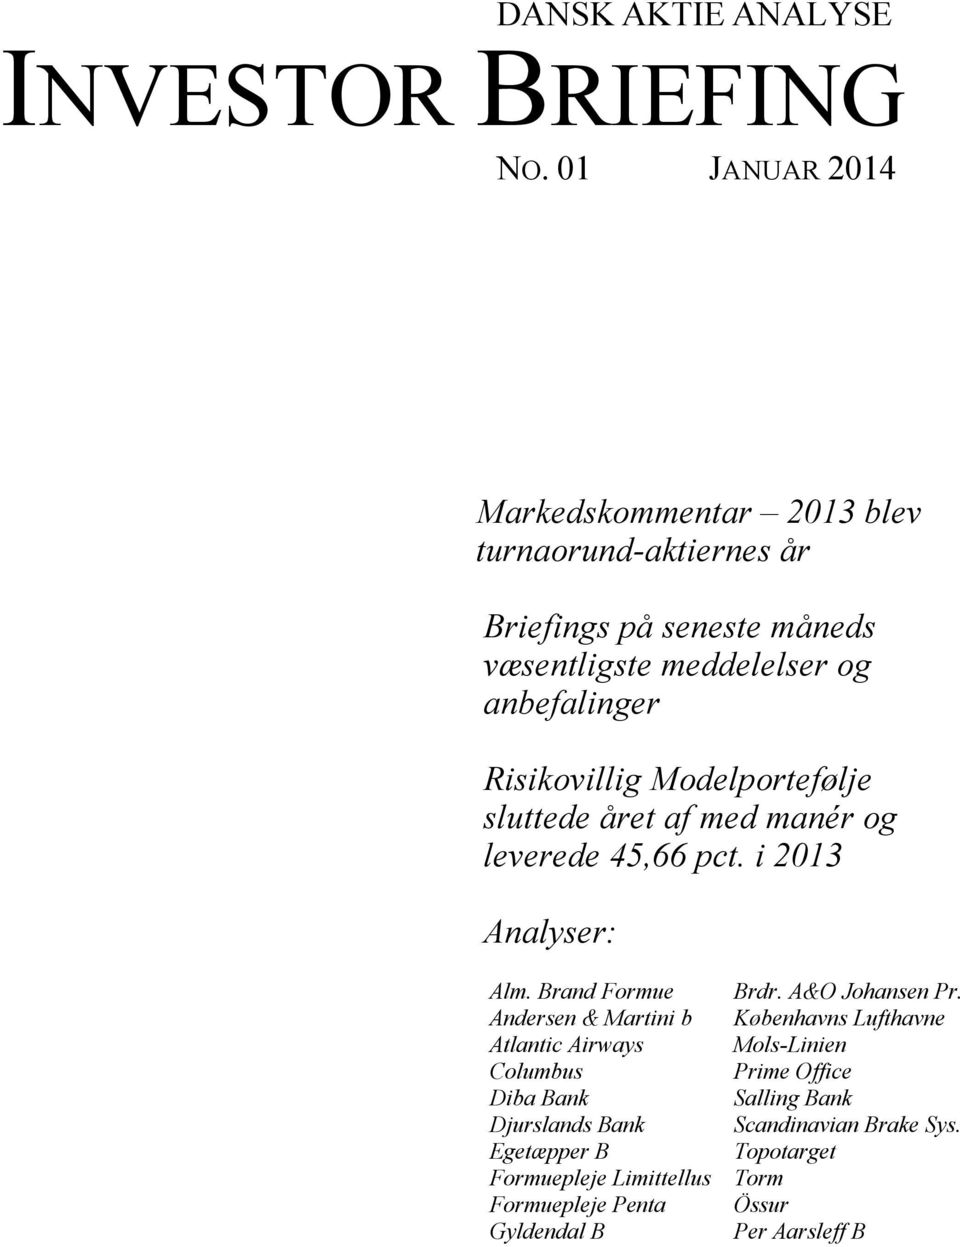 Risikovillig Modelportefølje sluttede året af med manér og leverede 45,66 pct. i 2013 Analyser: Alm. Brand Formue Brdr. A&O Johansen Pr.